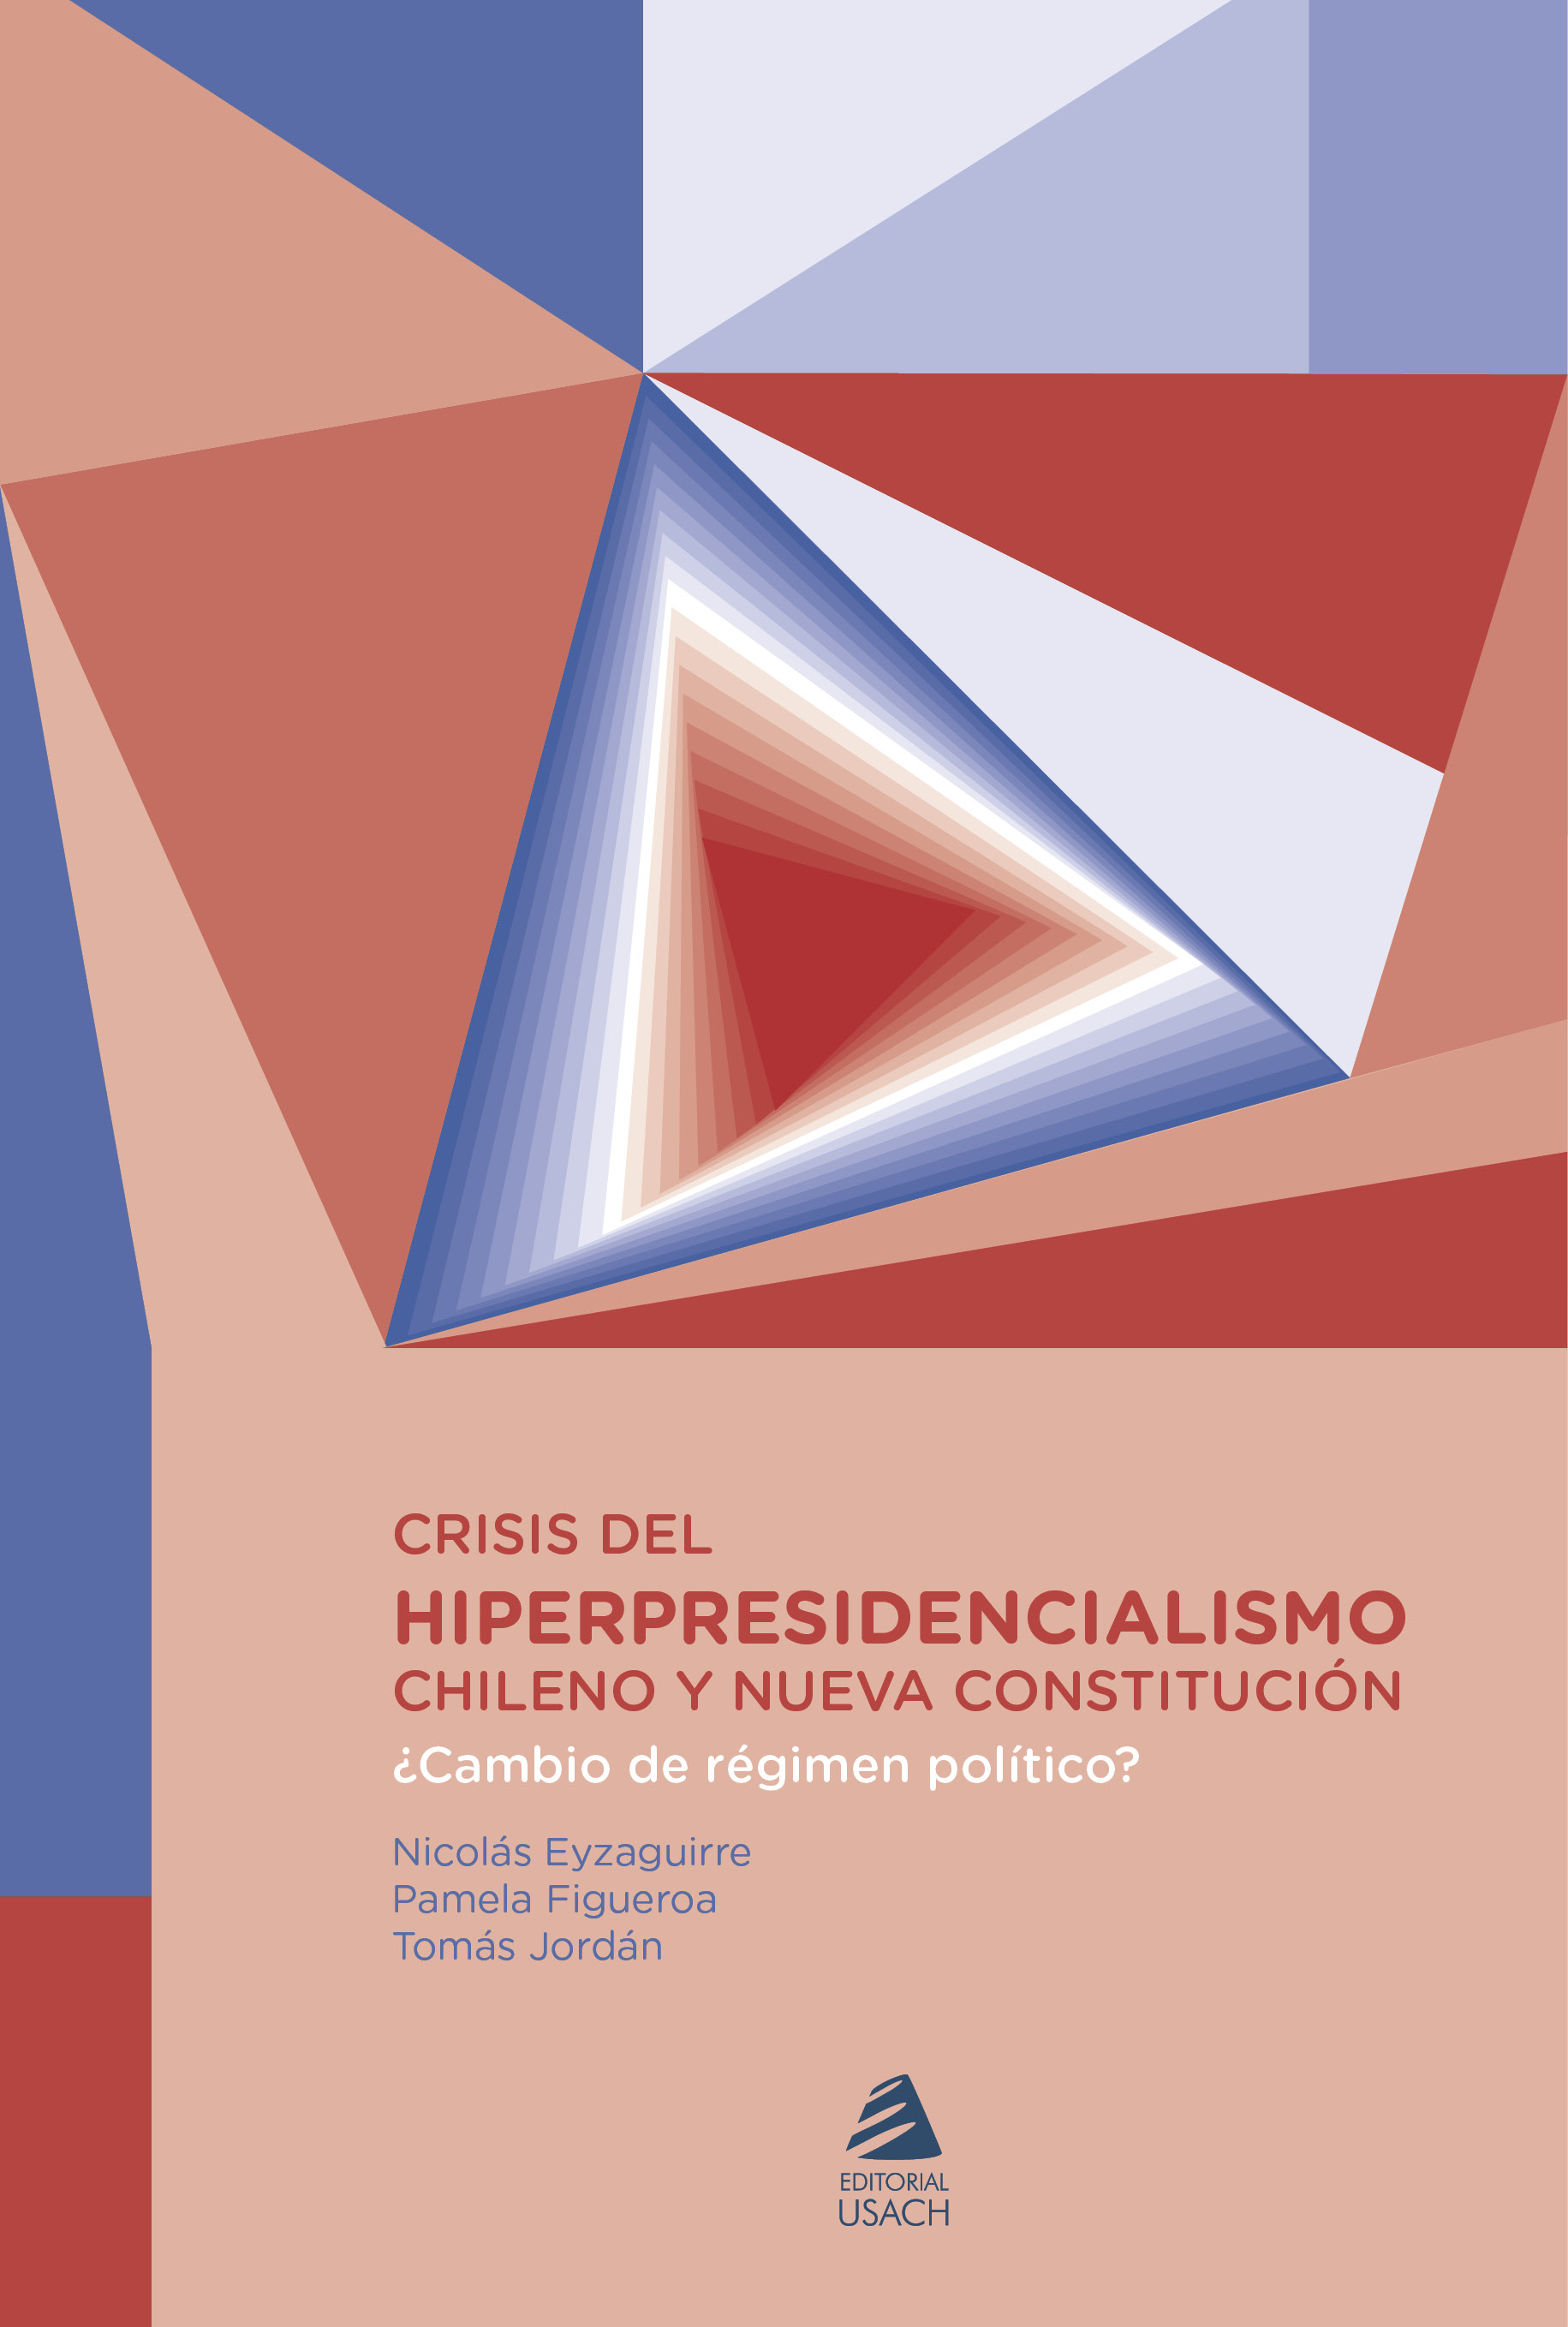 Crisis del hiperpresidencialismo chileno y nueva Constitución. ¿Cambio de régimen político?